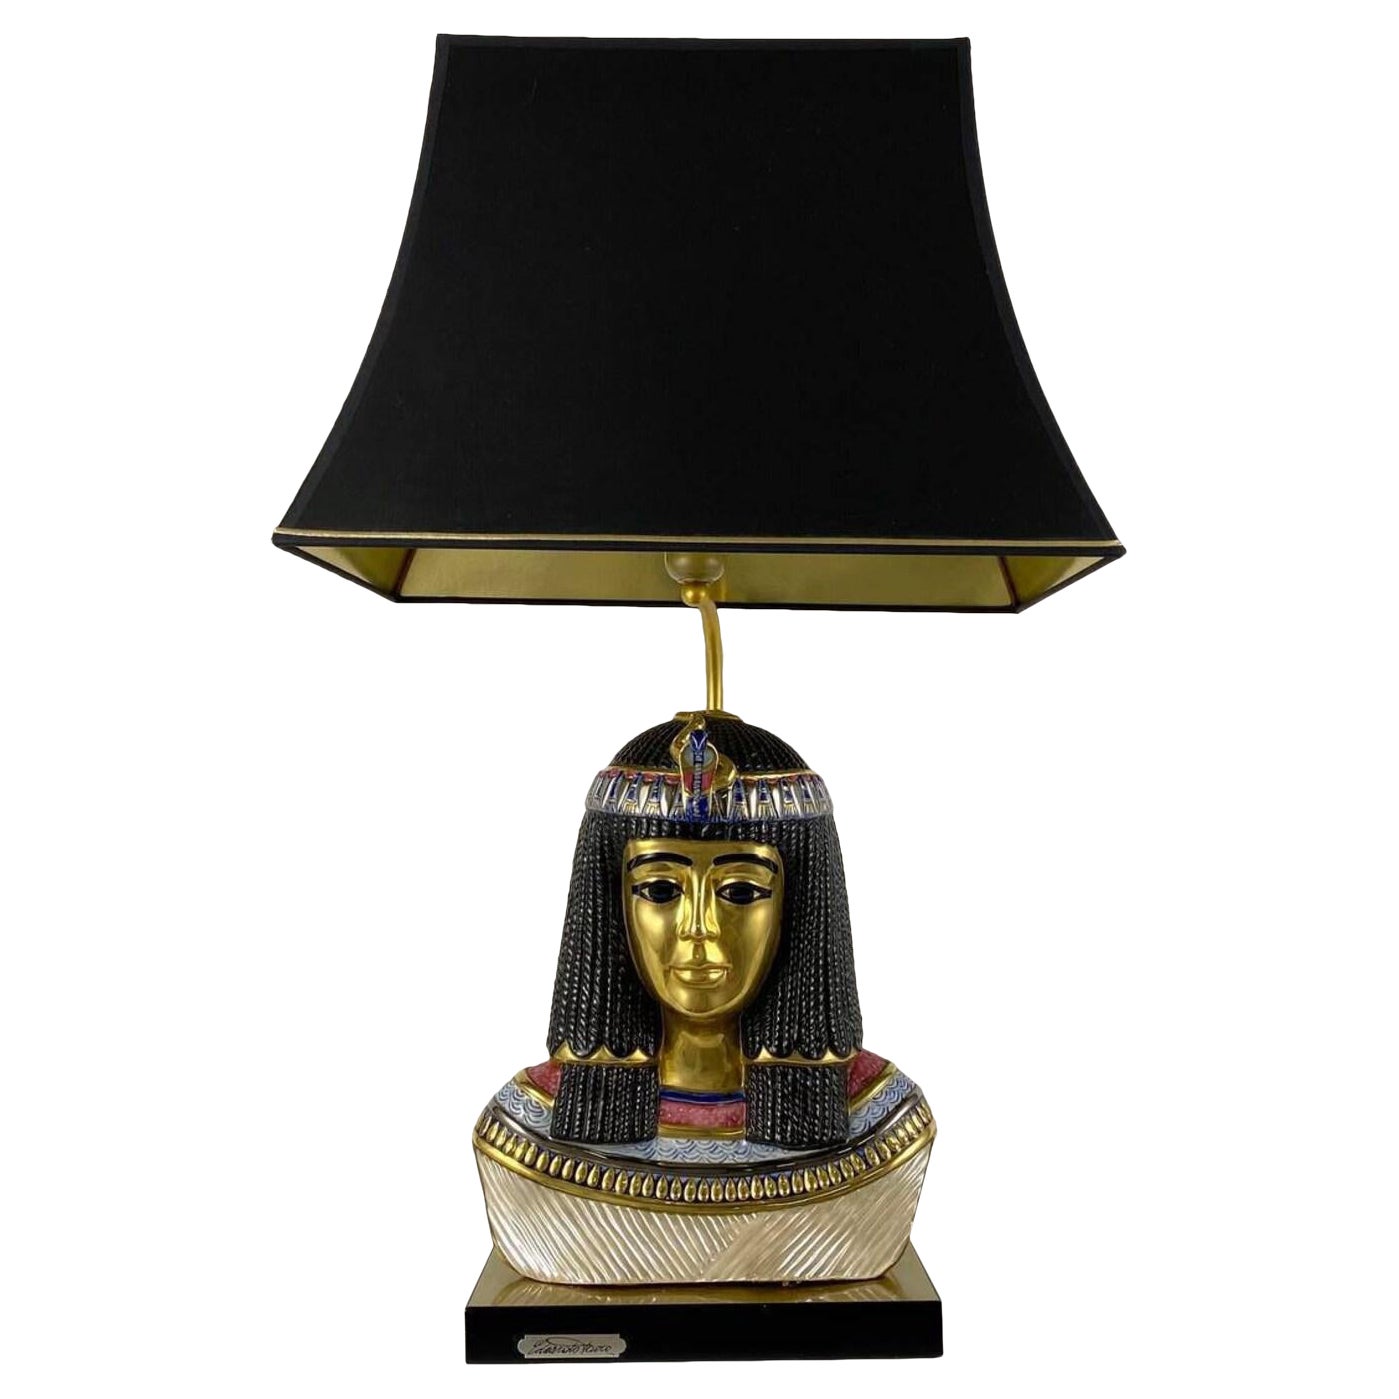 Einzigartige Edoardo Tasca Scultura Viva Tischlampe, ägyptische Pharohenbüste der Königin von Ägypten, Italien